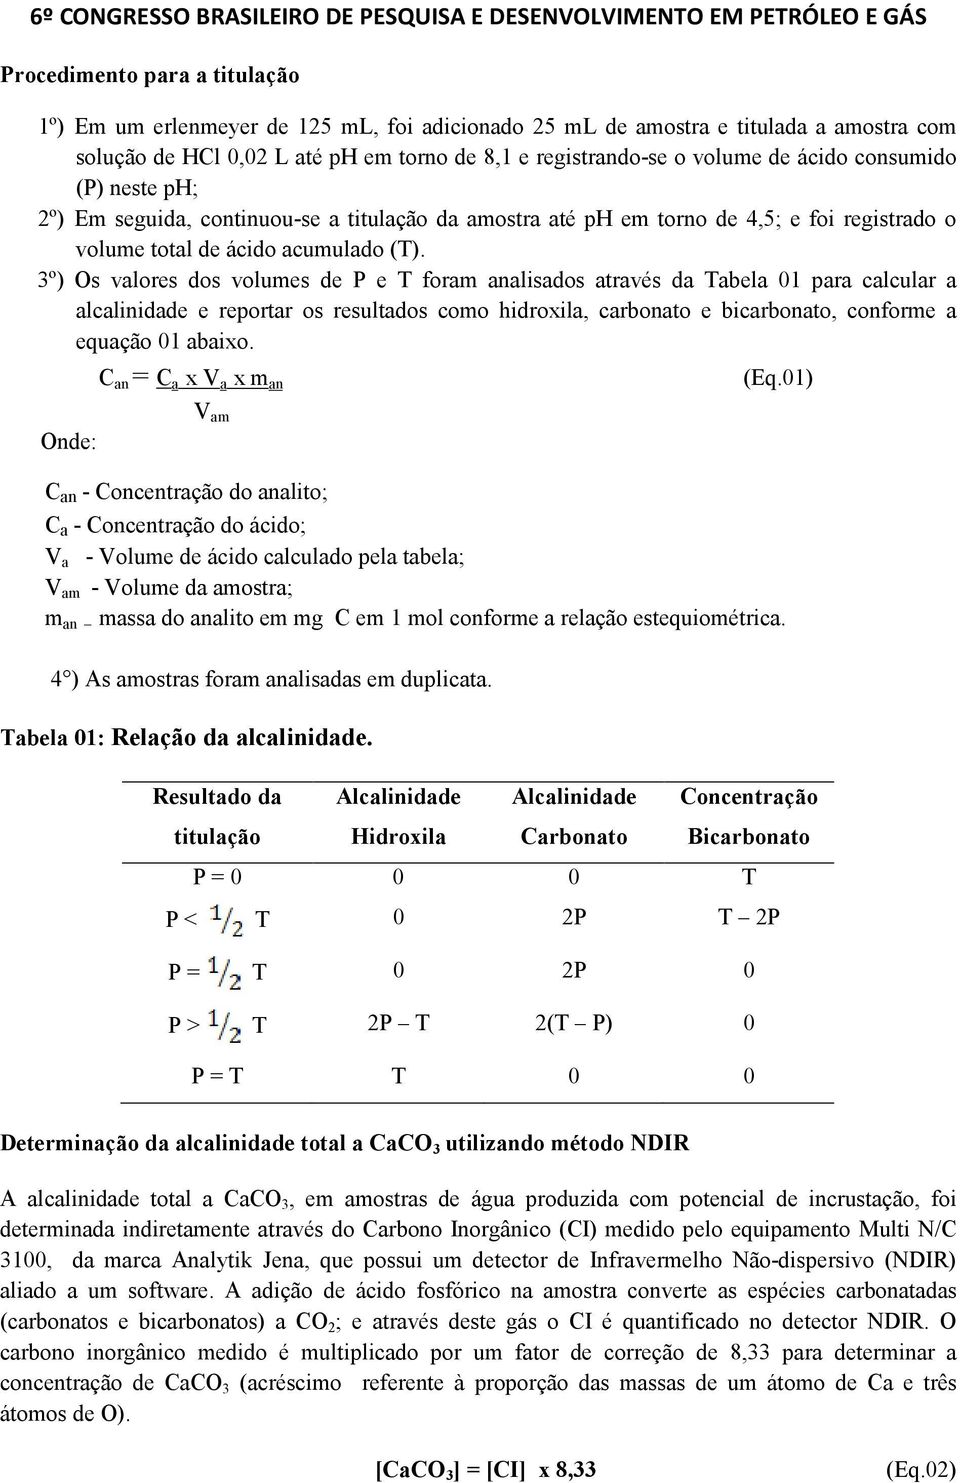 3º) Os valores dos volumes de P e T foram analisados através da Tabela 01 para calcular a alcalinidade e reportar os resultados como hidroxila, carbonato e bicarbonato, conforme a equação 01 abaixo.